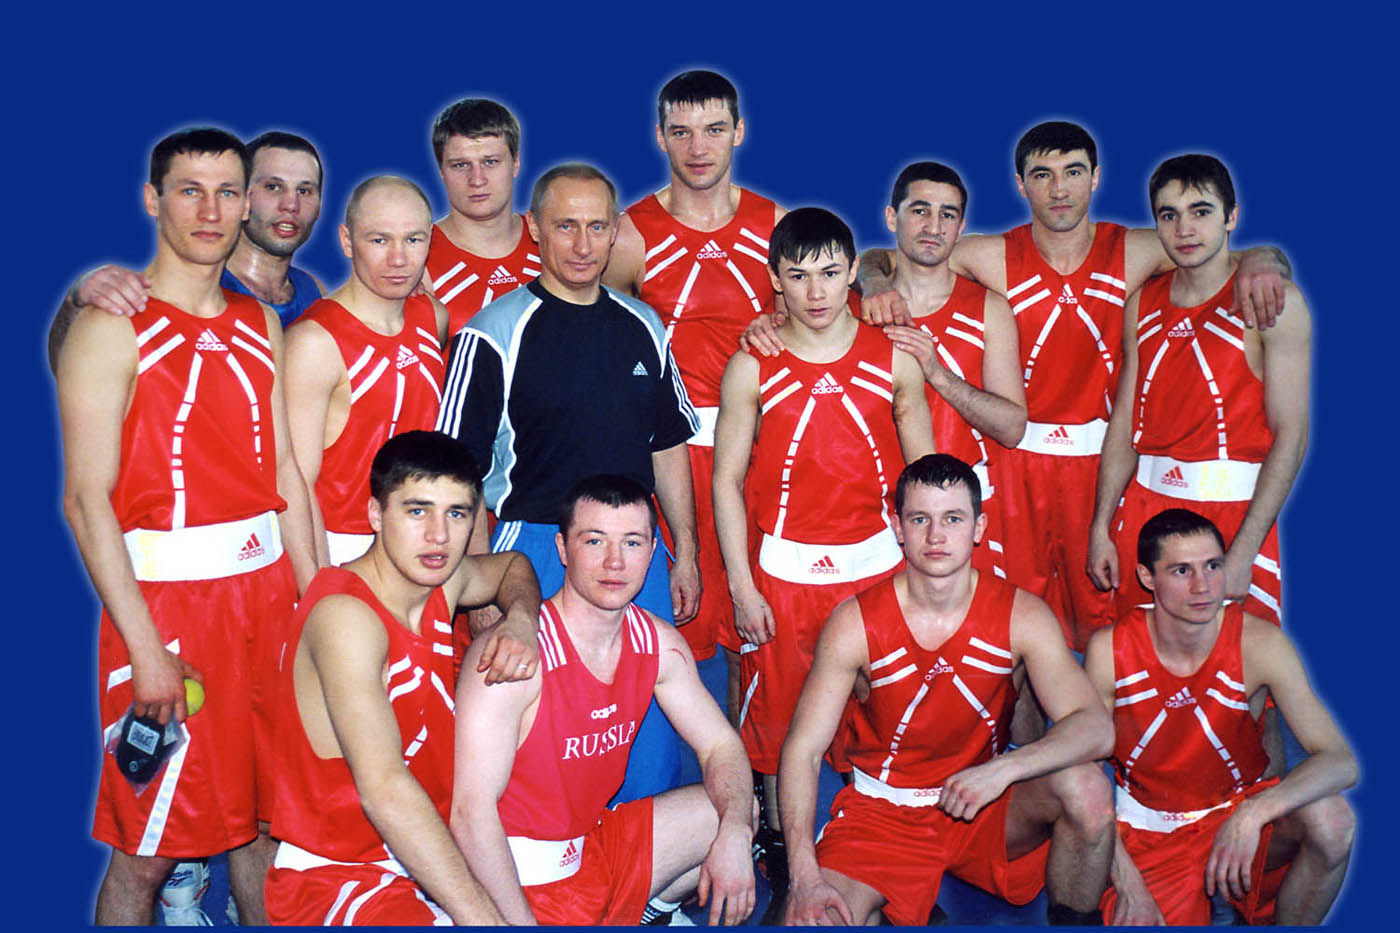 Олимпийская сборная команда России по боксу во главе с Президентом России В.В. Путиным на Олимпийской базе, г. Чехов, 2004 год.